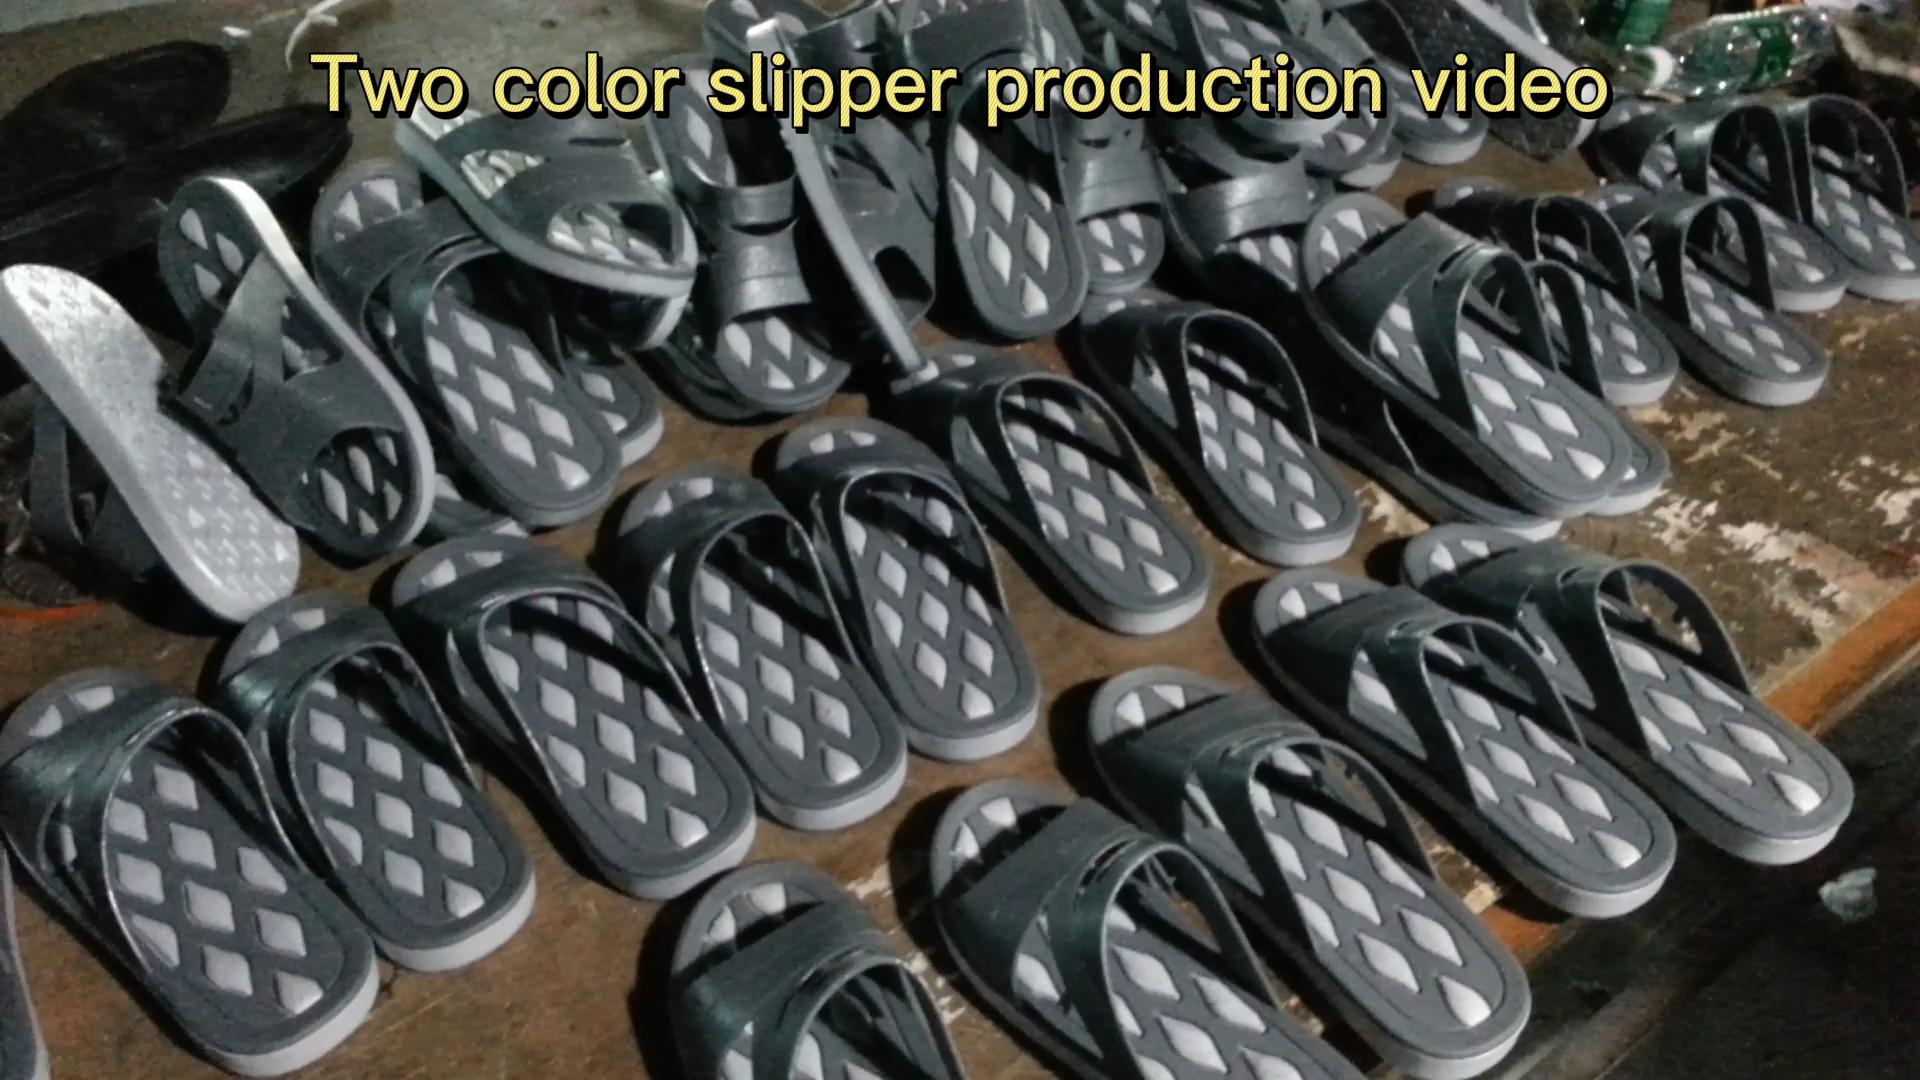 Vidéo de production de chaussons bicolores